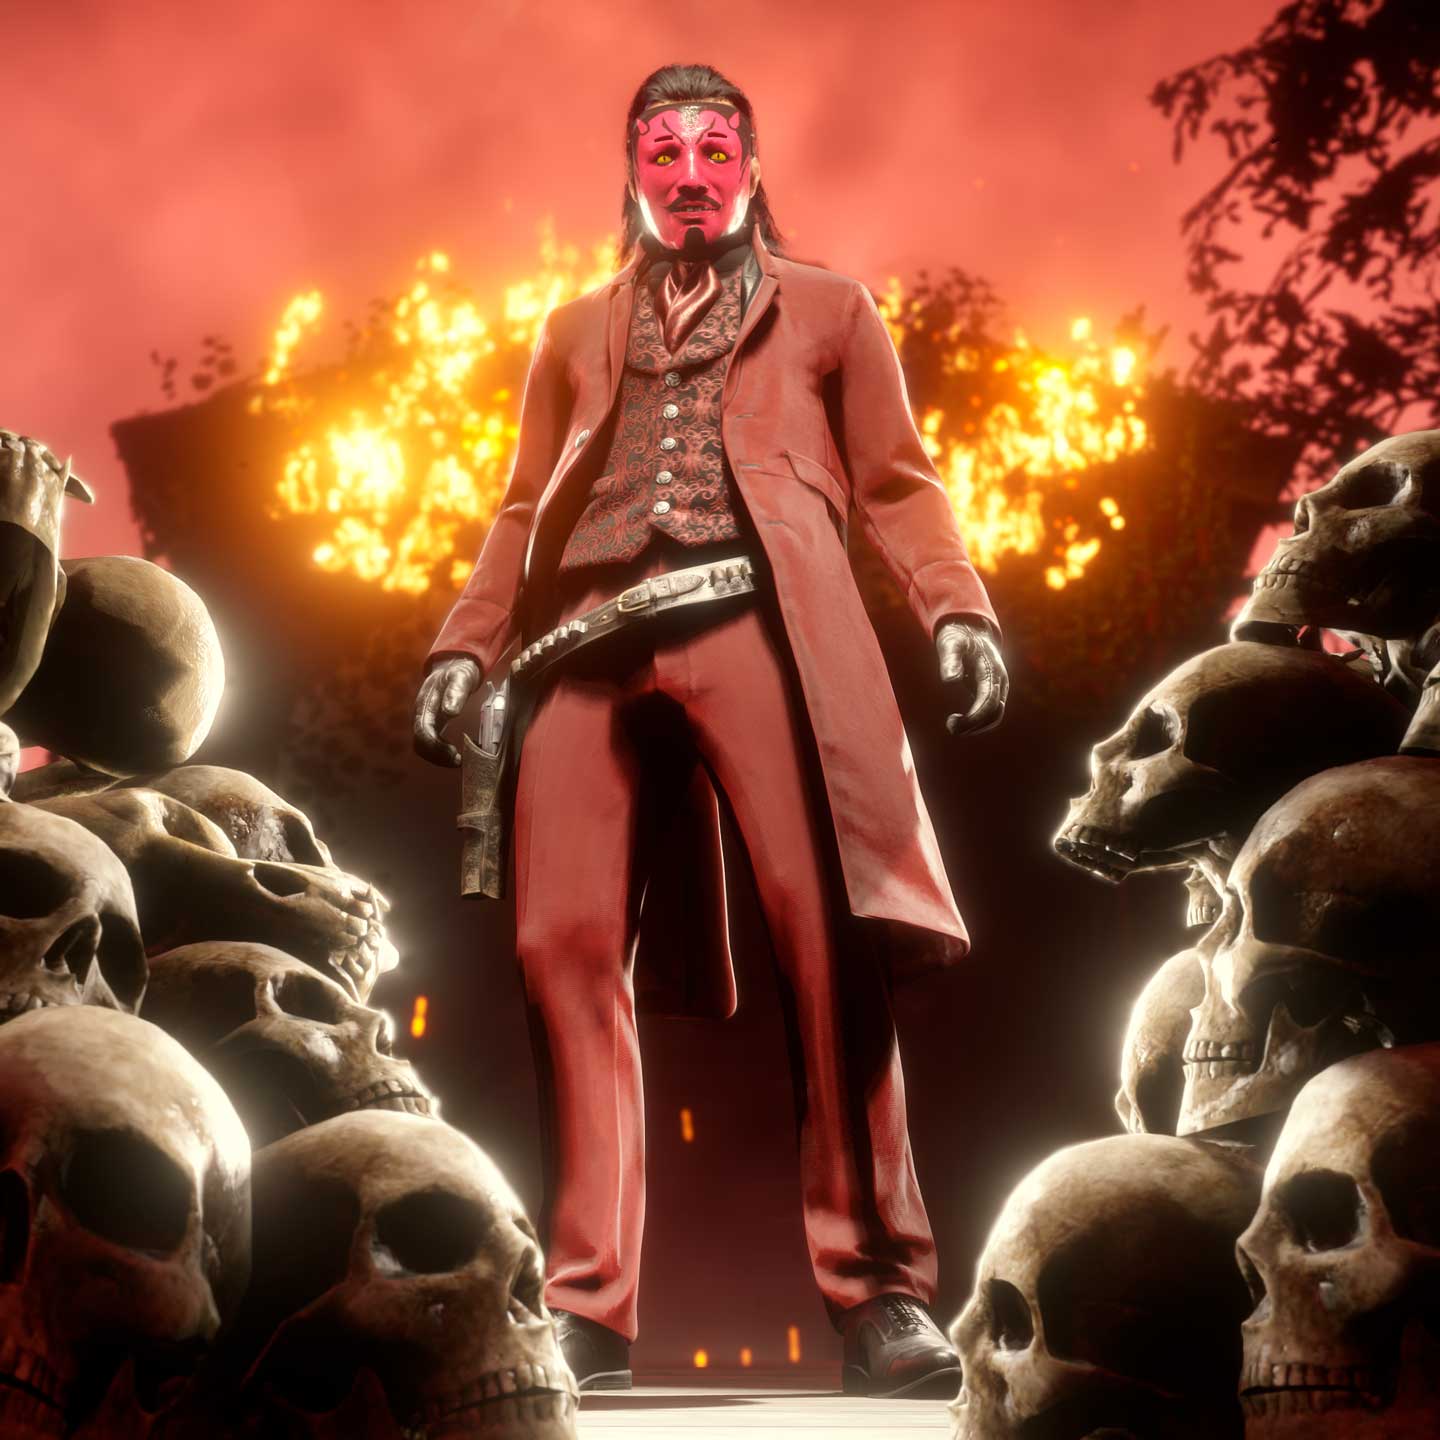 Red Dead Online anuncia su evento de Halloween – Bonus Stage MX